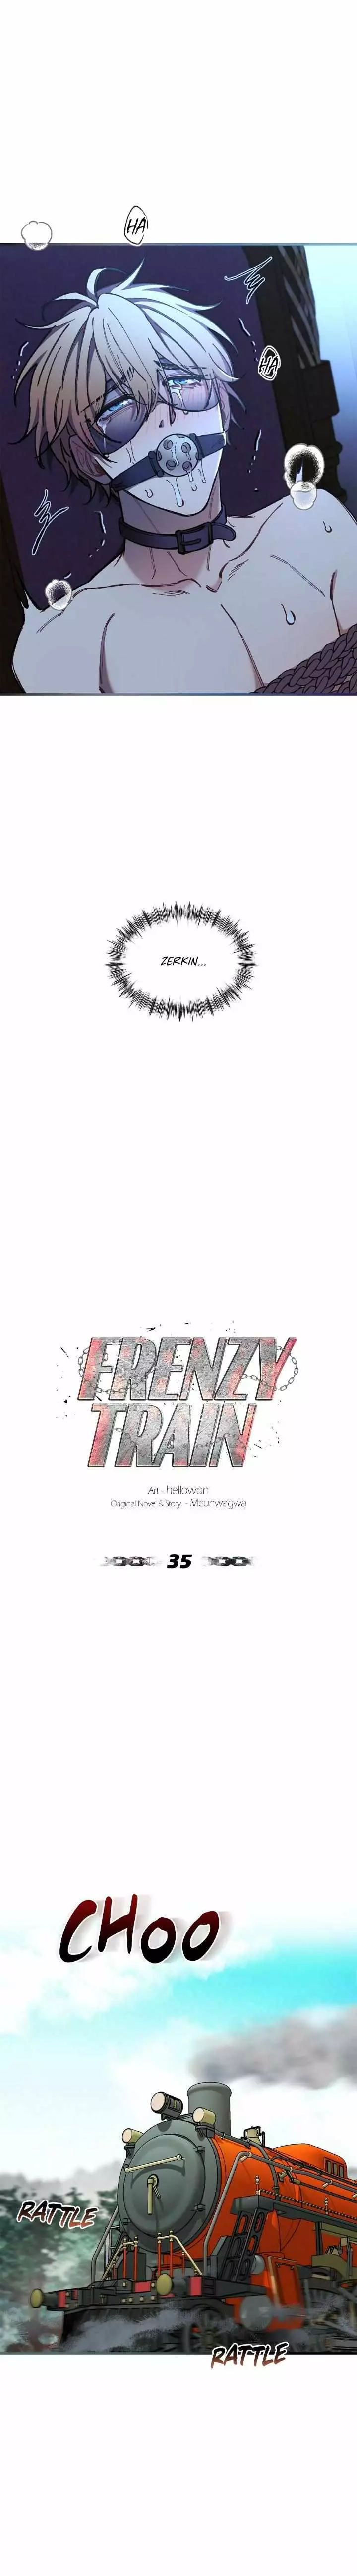 Frenzy Train - 35 page 9-86eb97f6